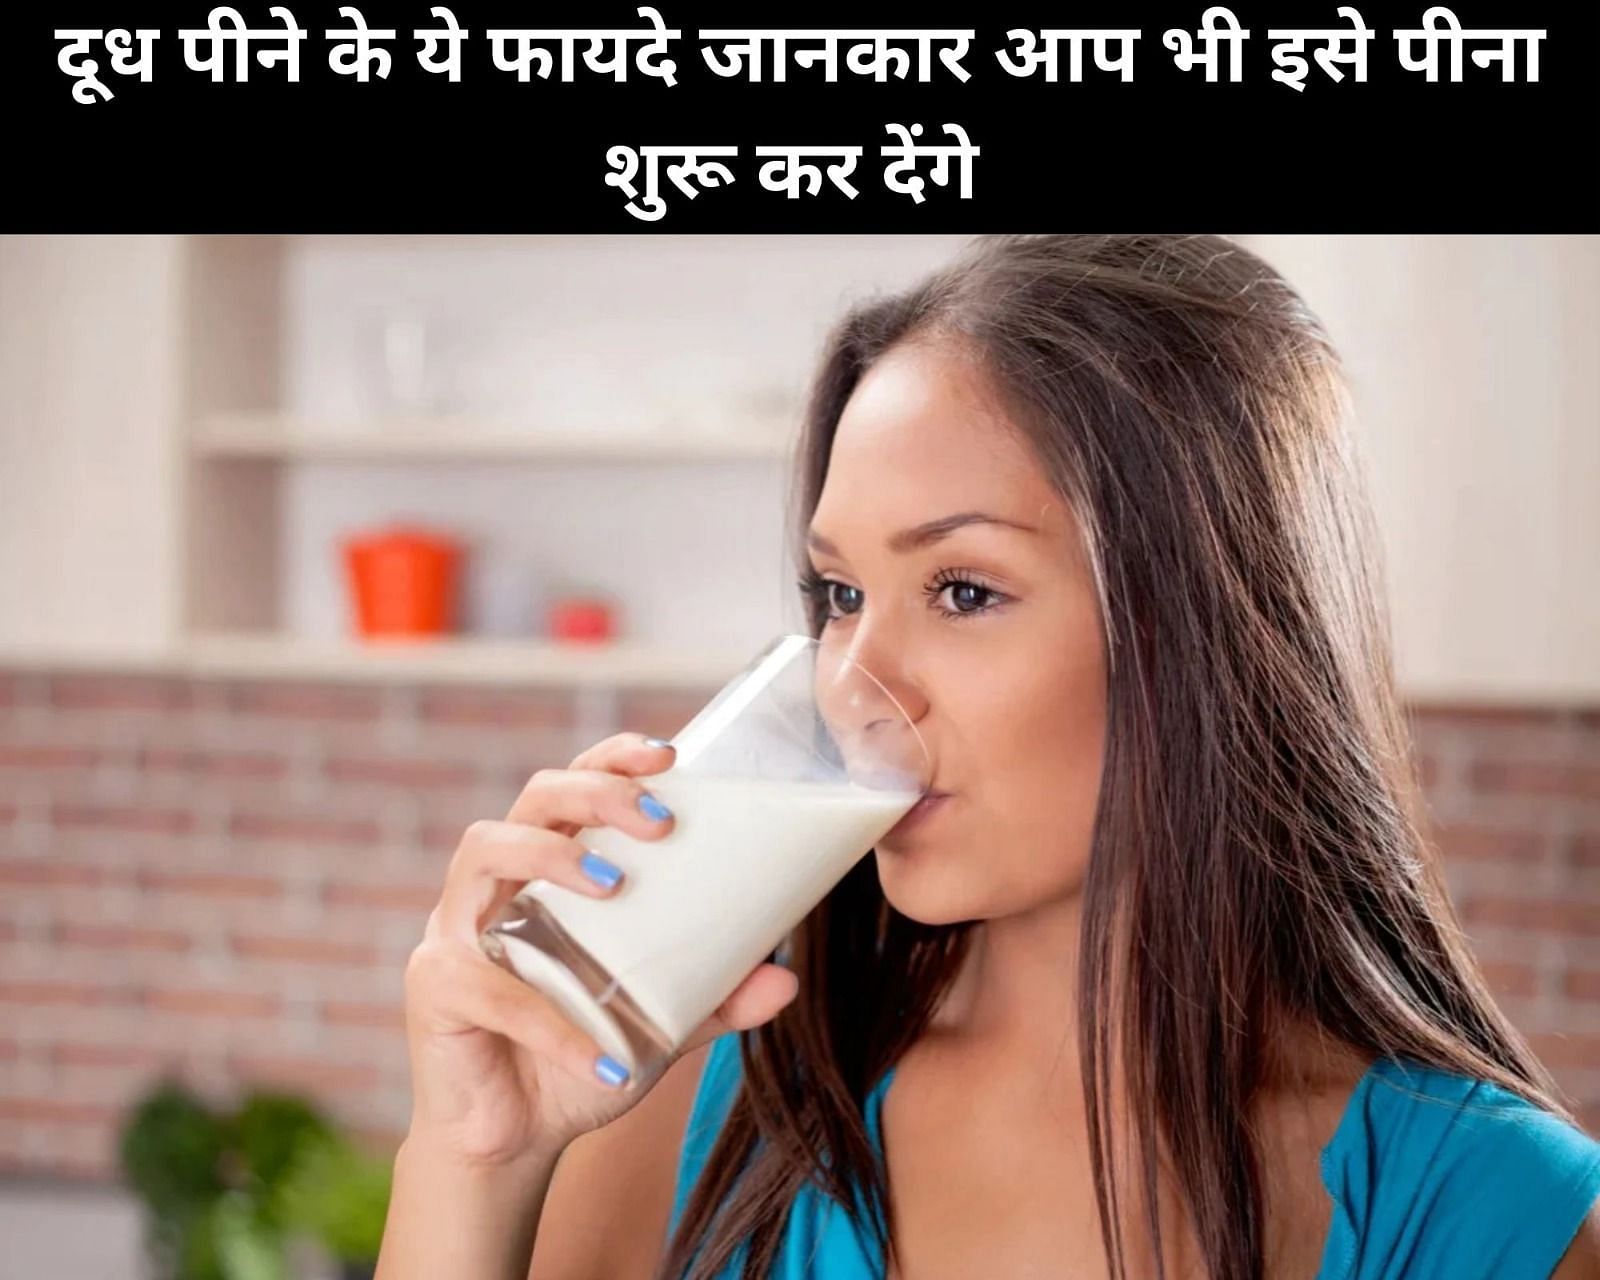 दूध पीने के ये 7 फायदे जानकार आप भी इसे पीना शुरू कर देंगे (फोटो - sportskeedaहिन्दी)